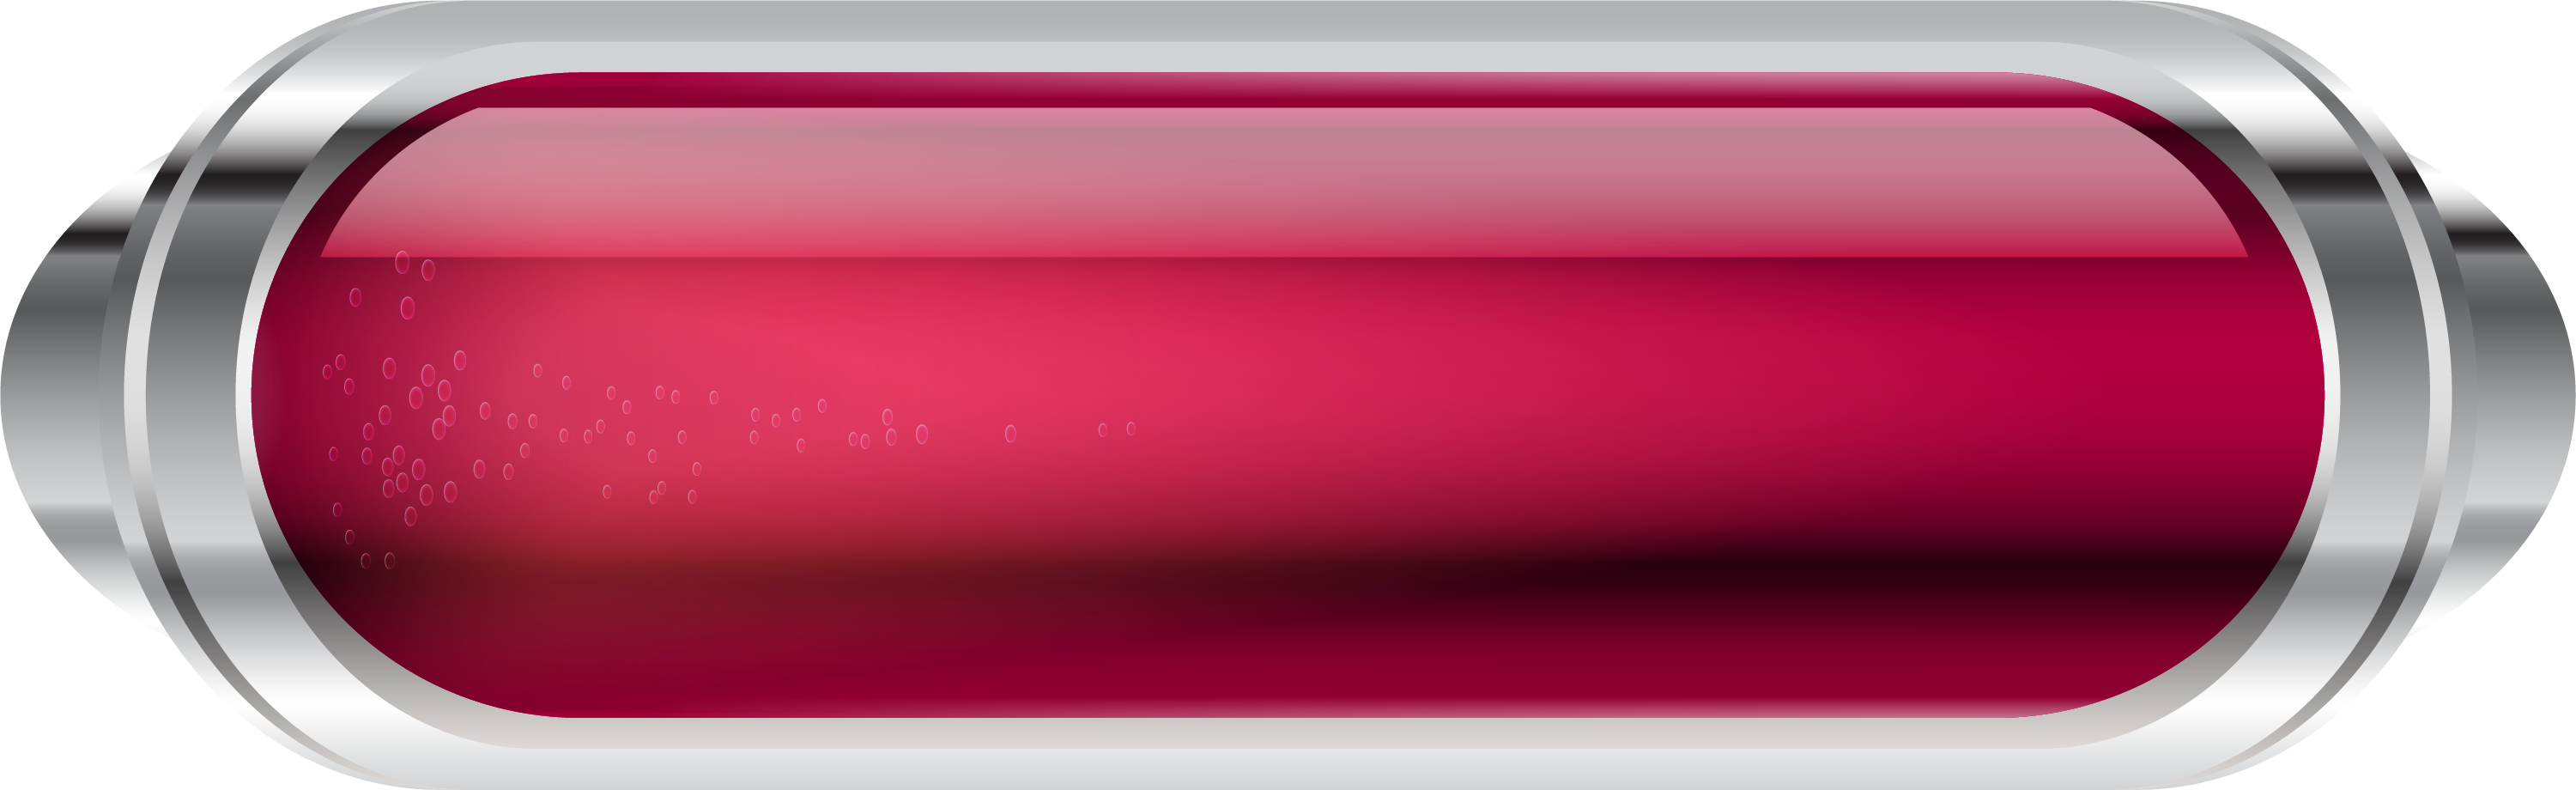 Gradient Button Transparent - Red Button Transparent Png Clipart (3001x920), Png Download